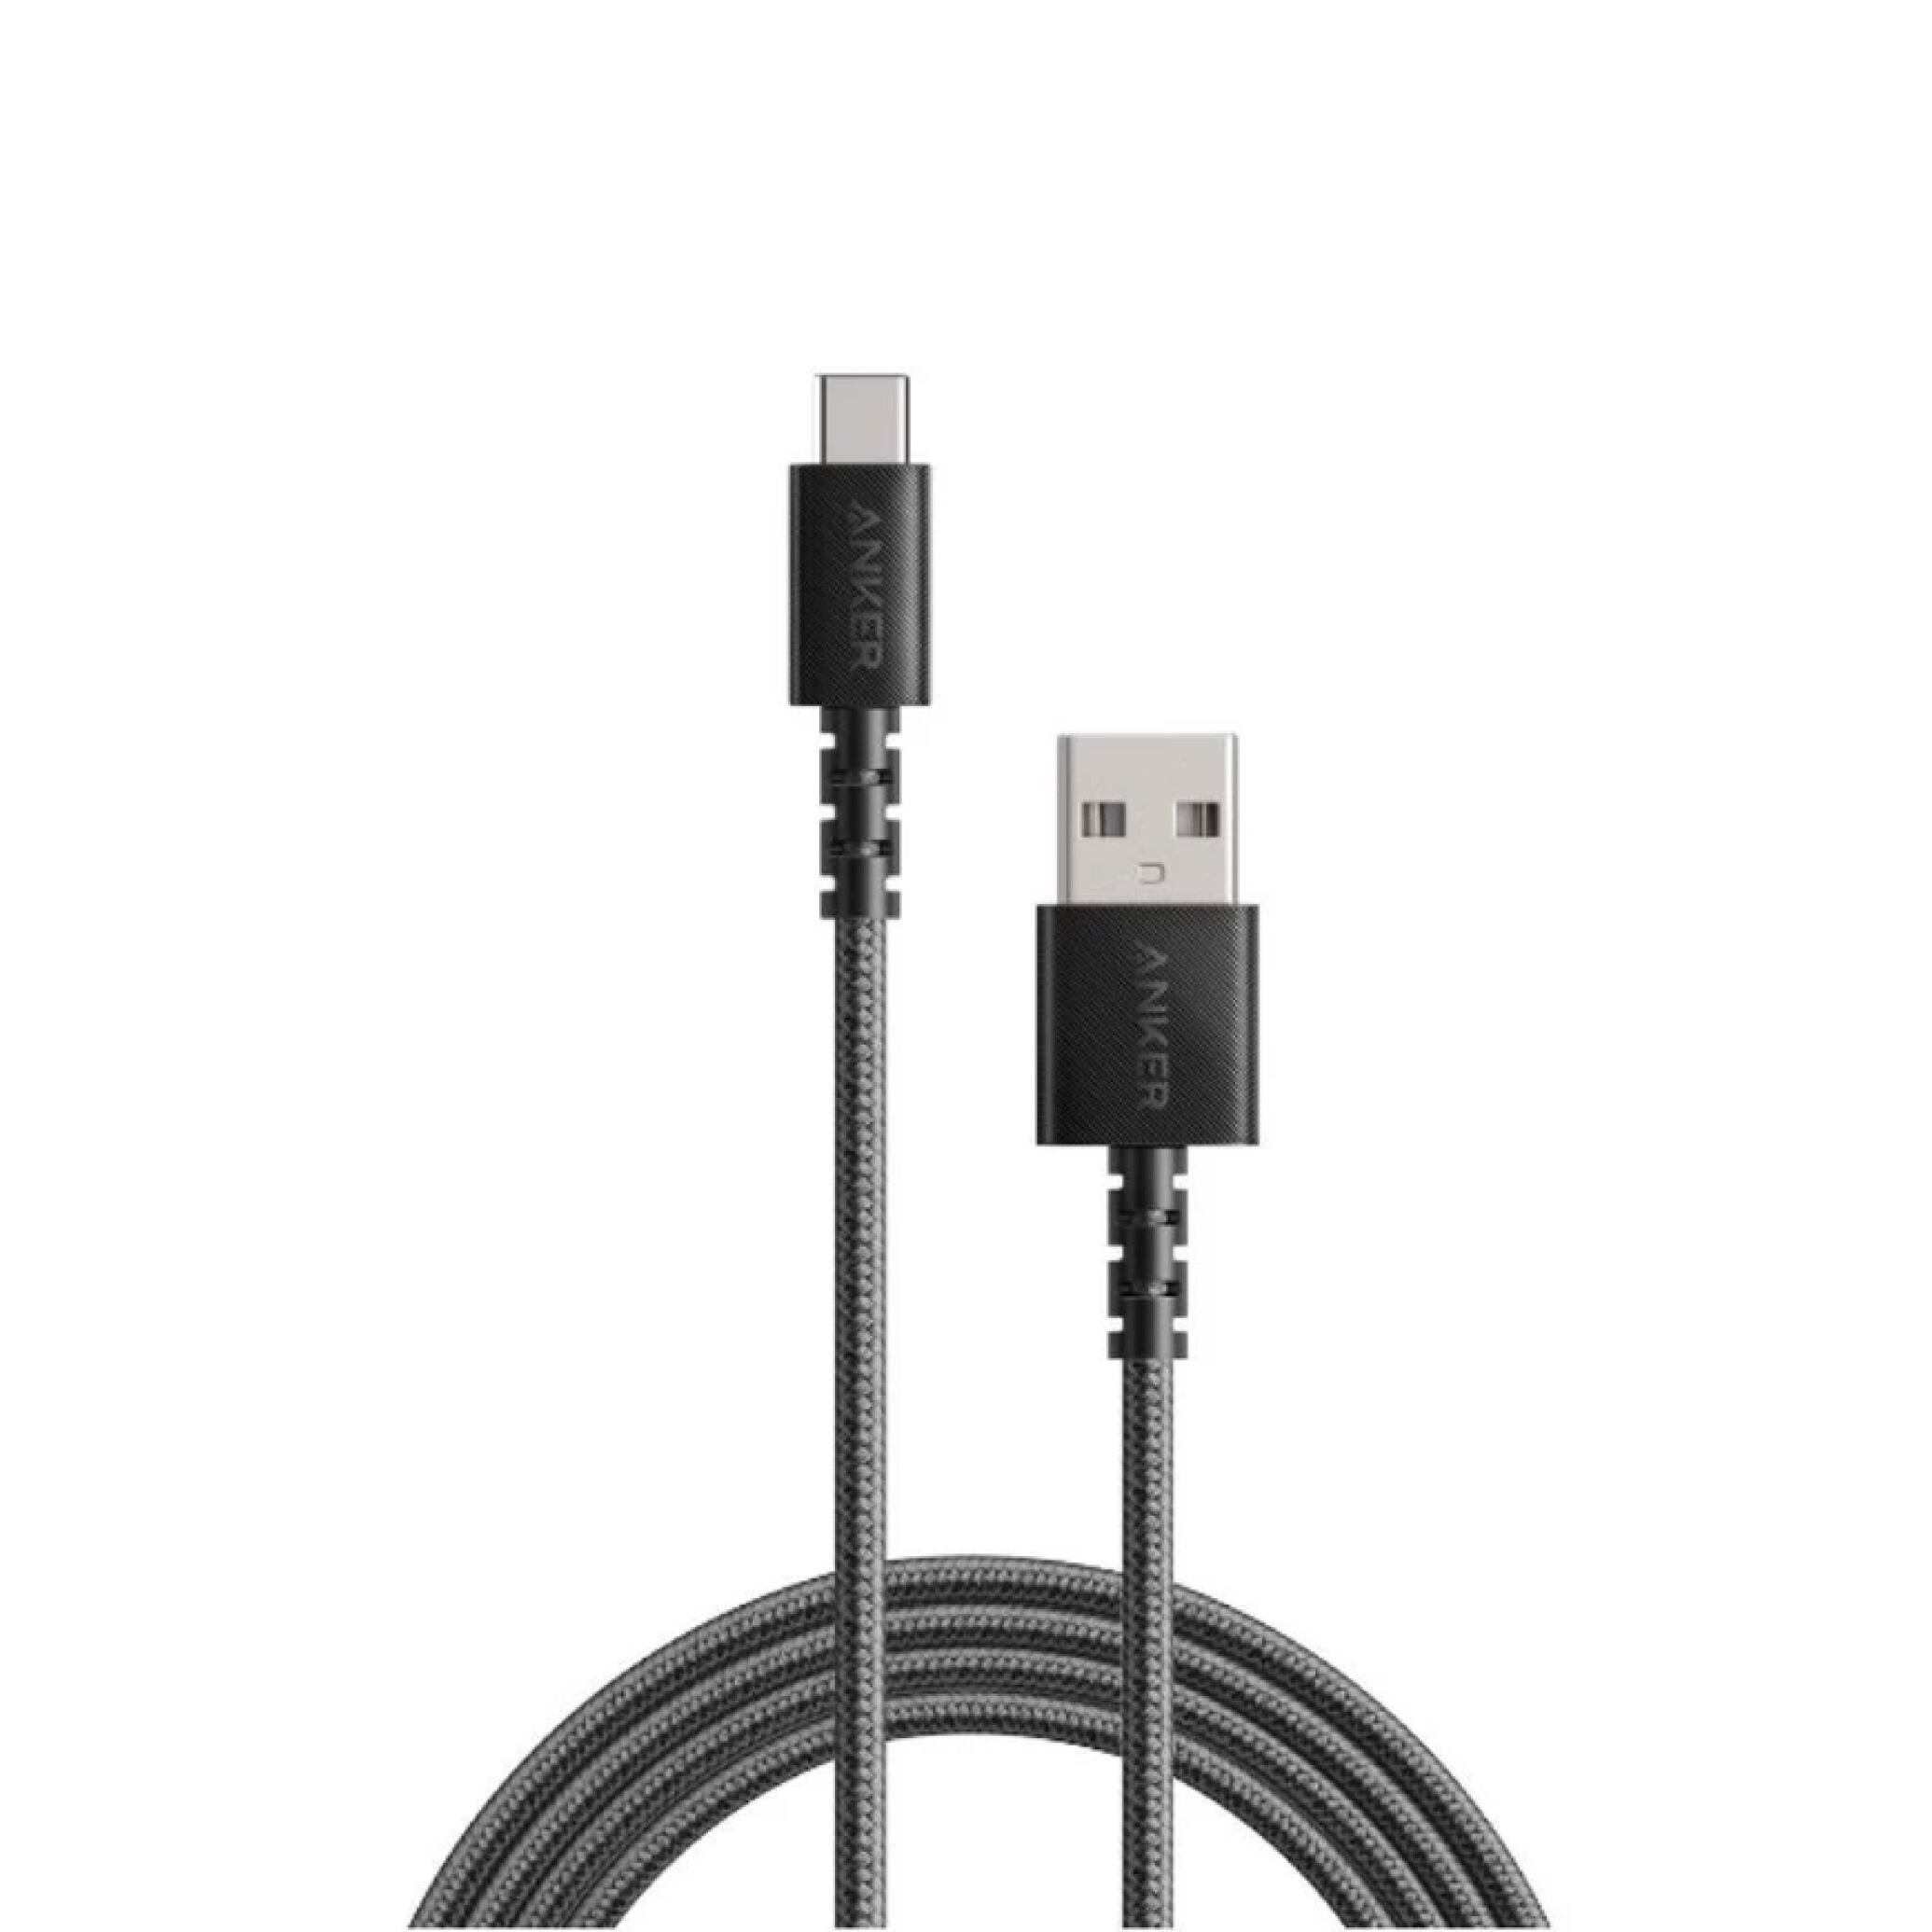  کابل تبدیل USB به USB-C انکر مدل A8023 Powerline Select Plus 